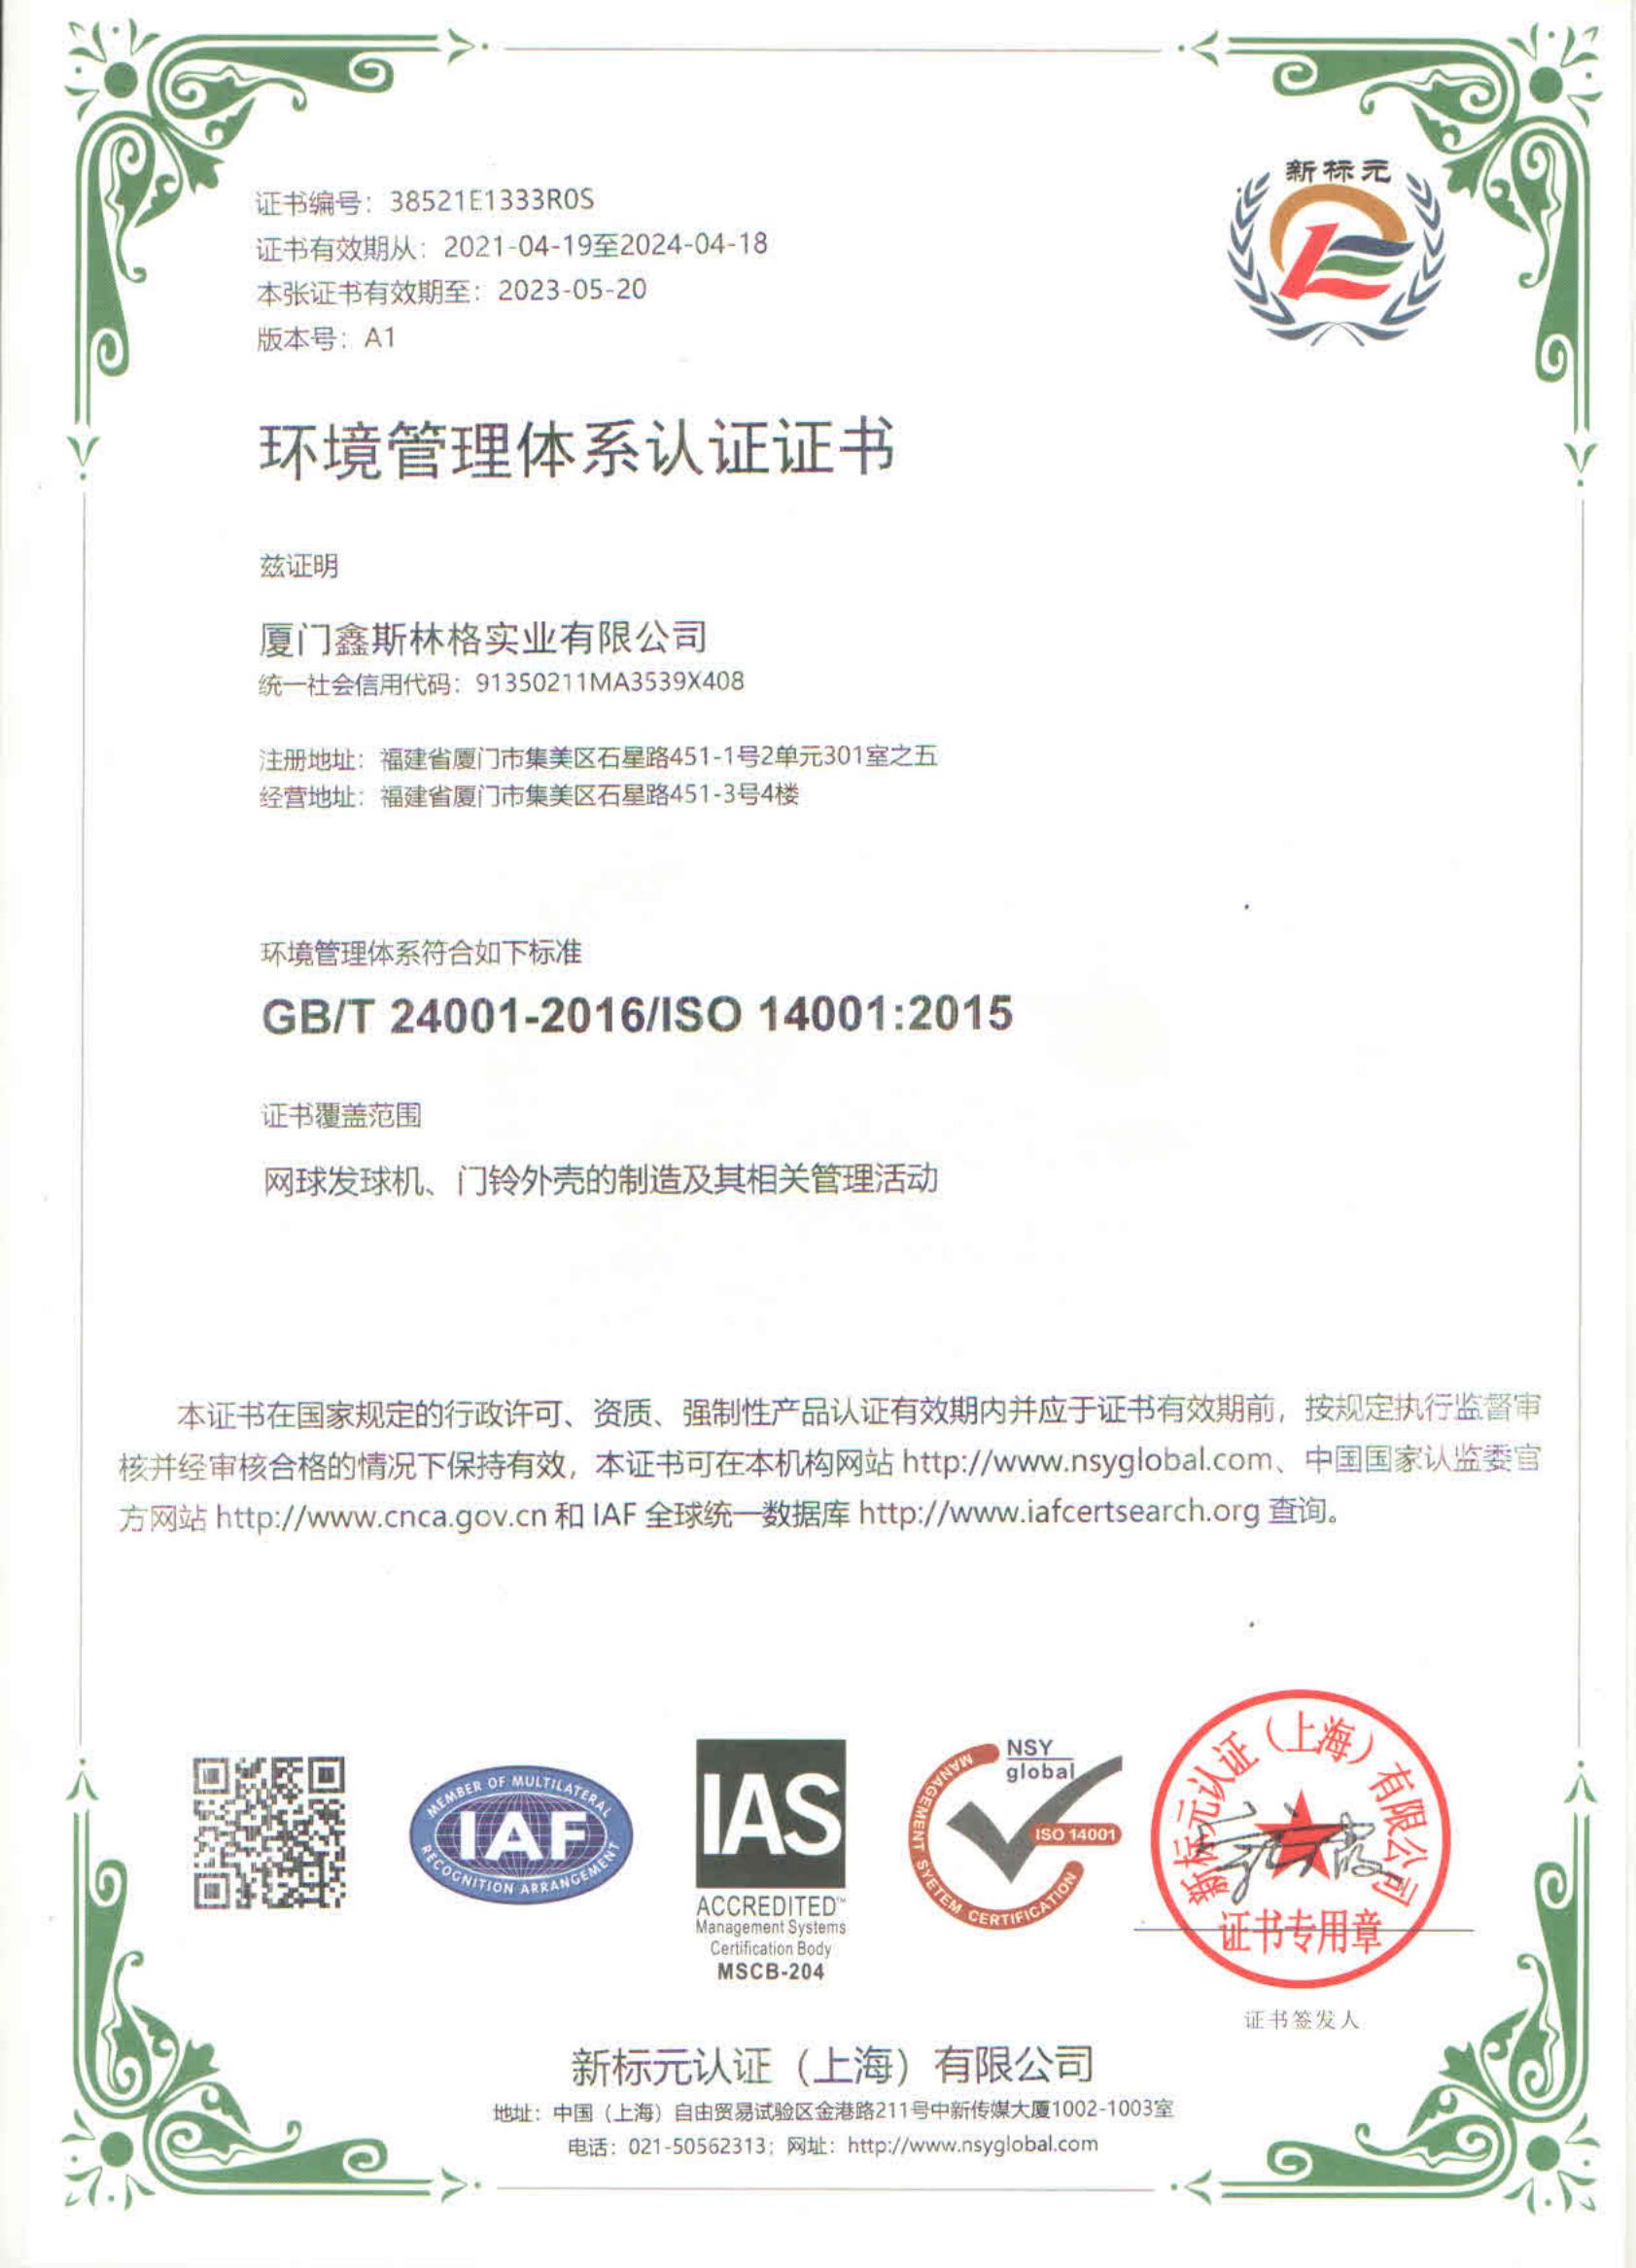 鑫斯林格---环境管理体系认证证书 ISO 14001 中英文_00